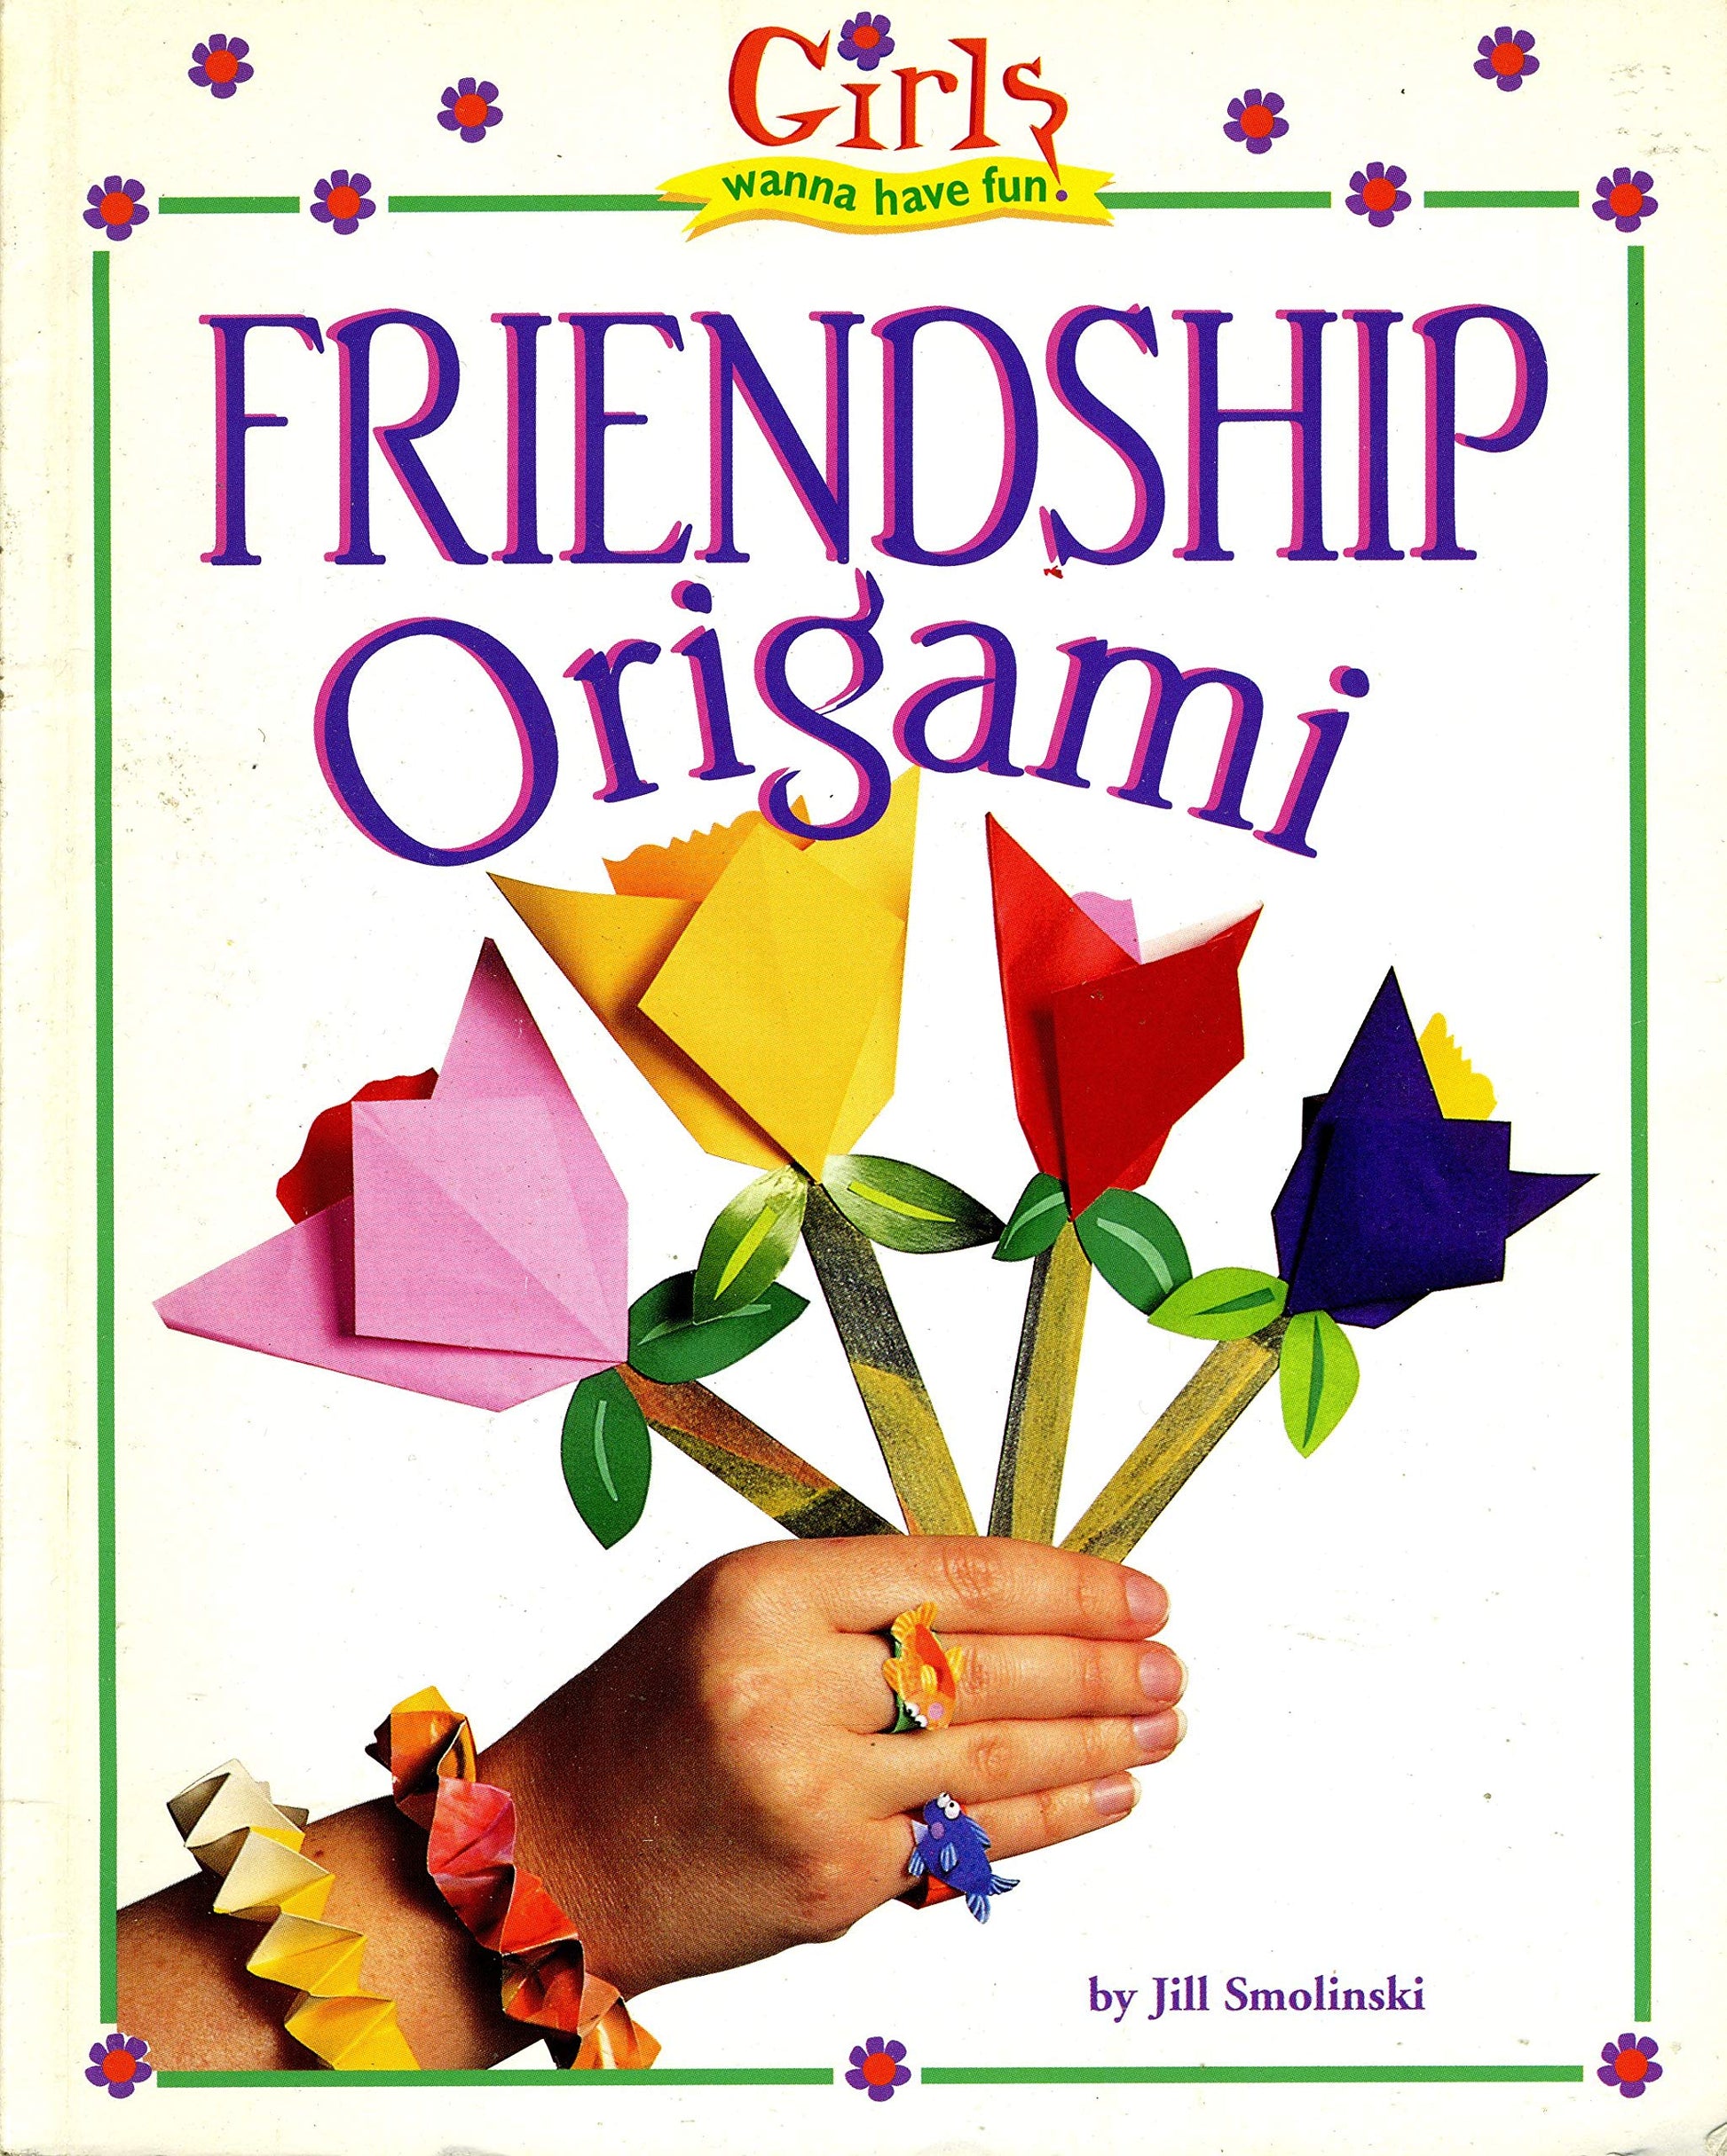 Friendship origami (Girls wanna have fun!)